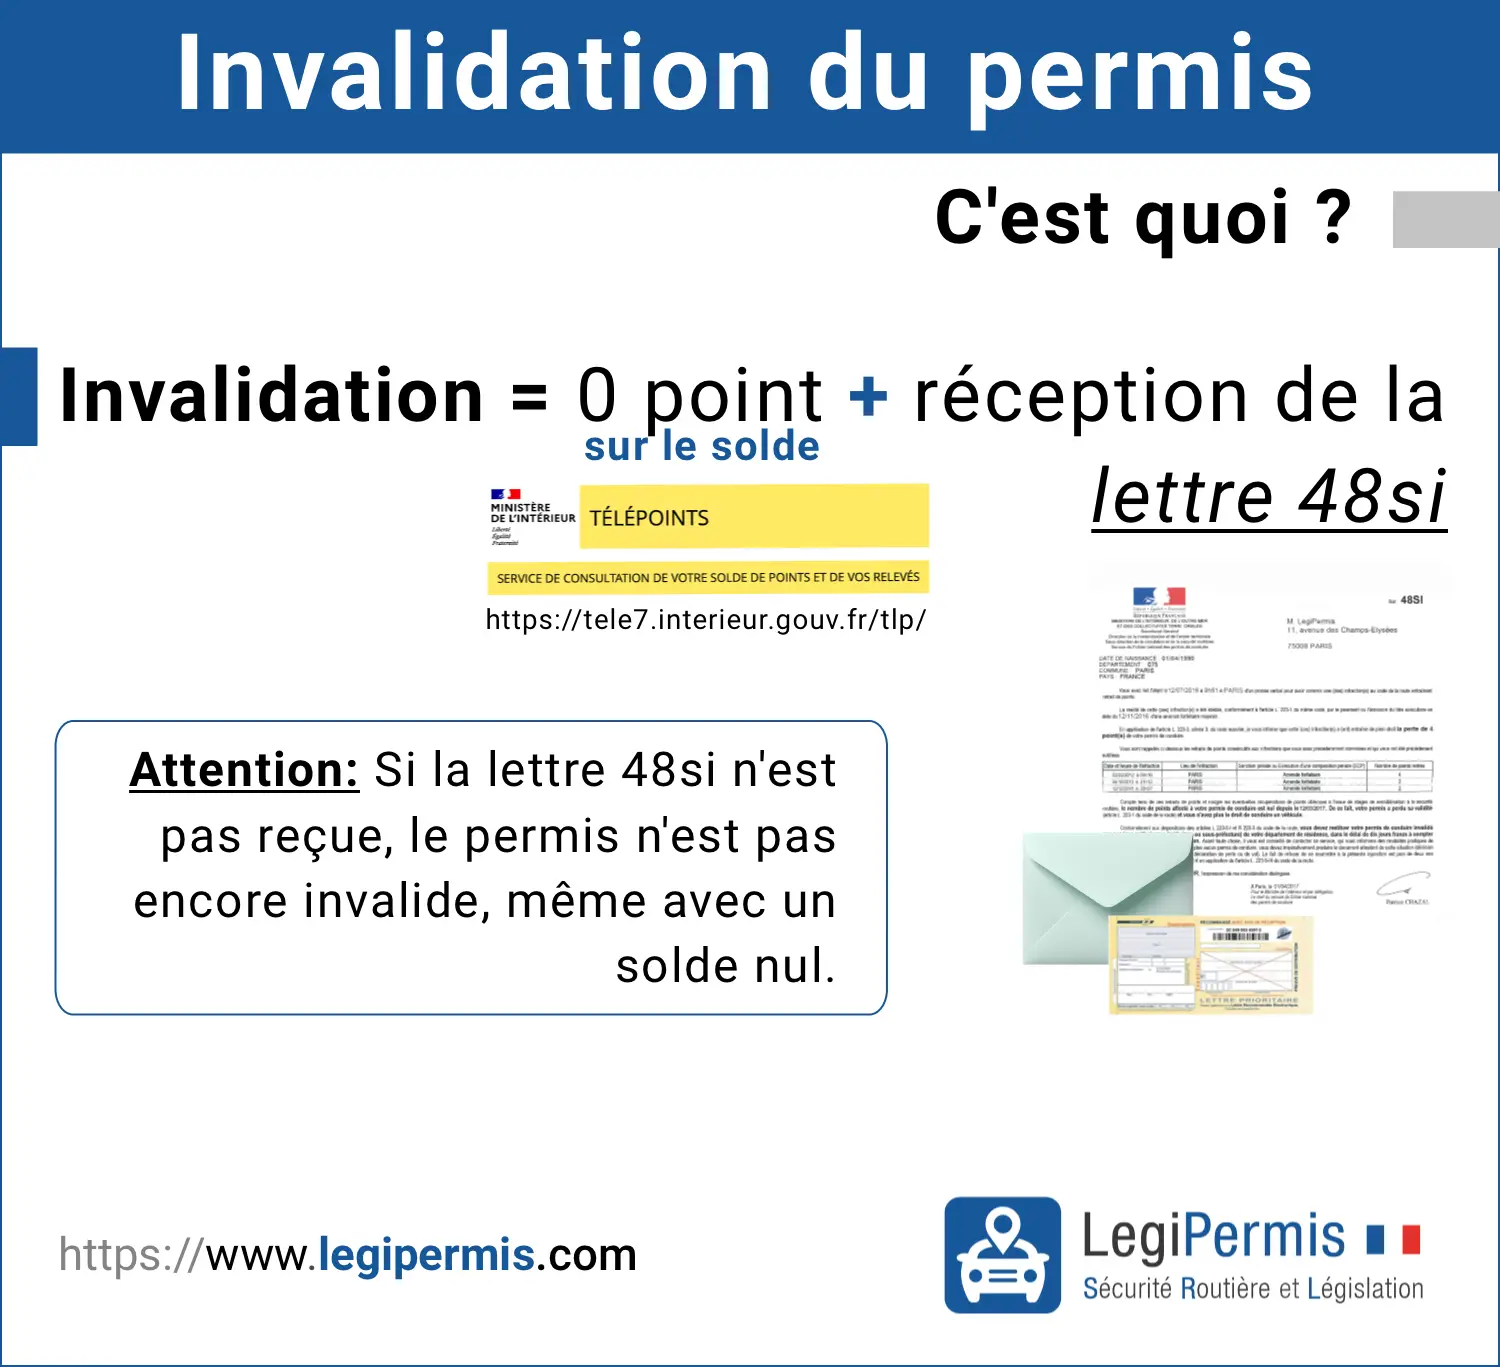 Invalidation du permis : plus de point sur le permis et réception de la lettre 48si.